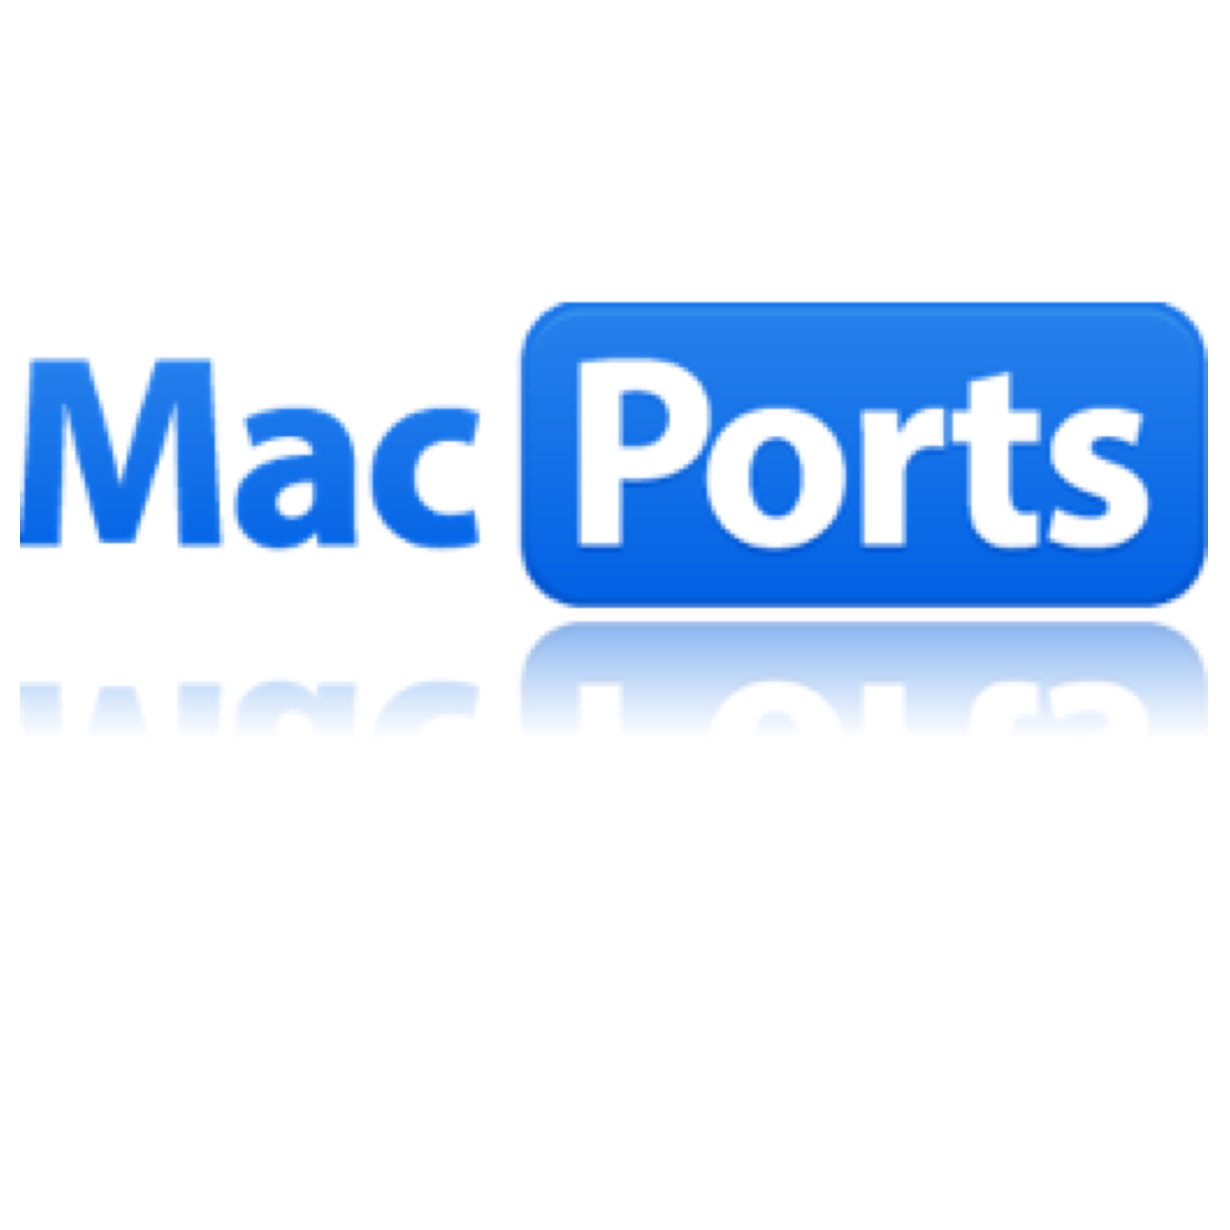 polymath software for mac